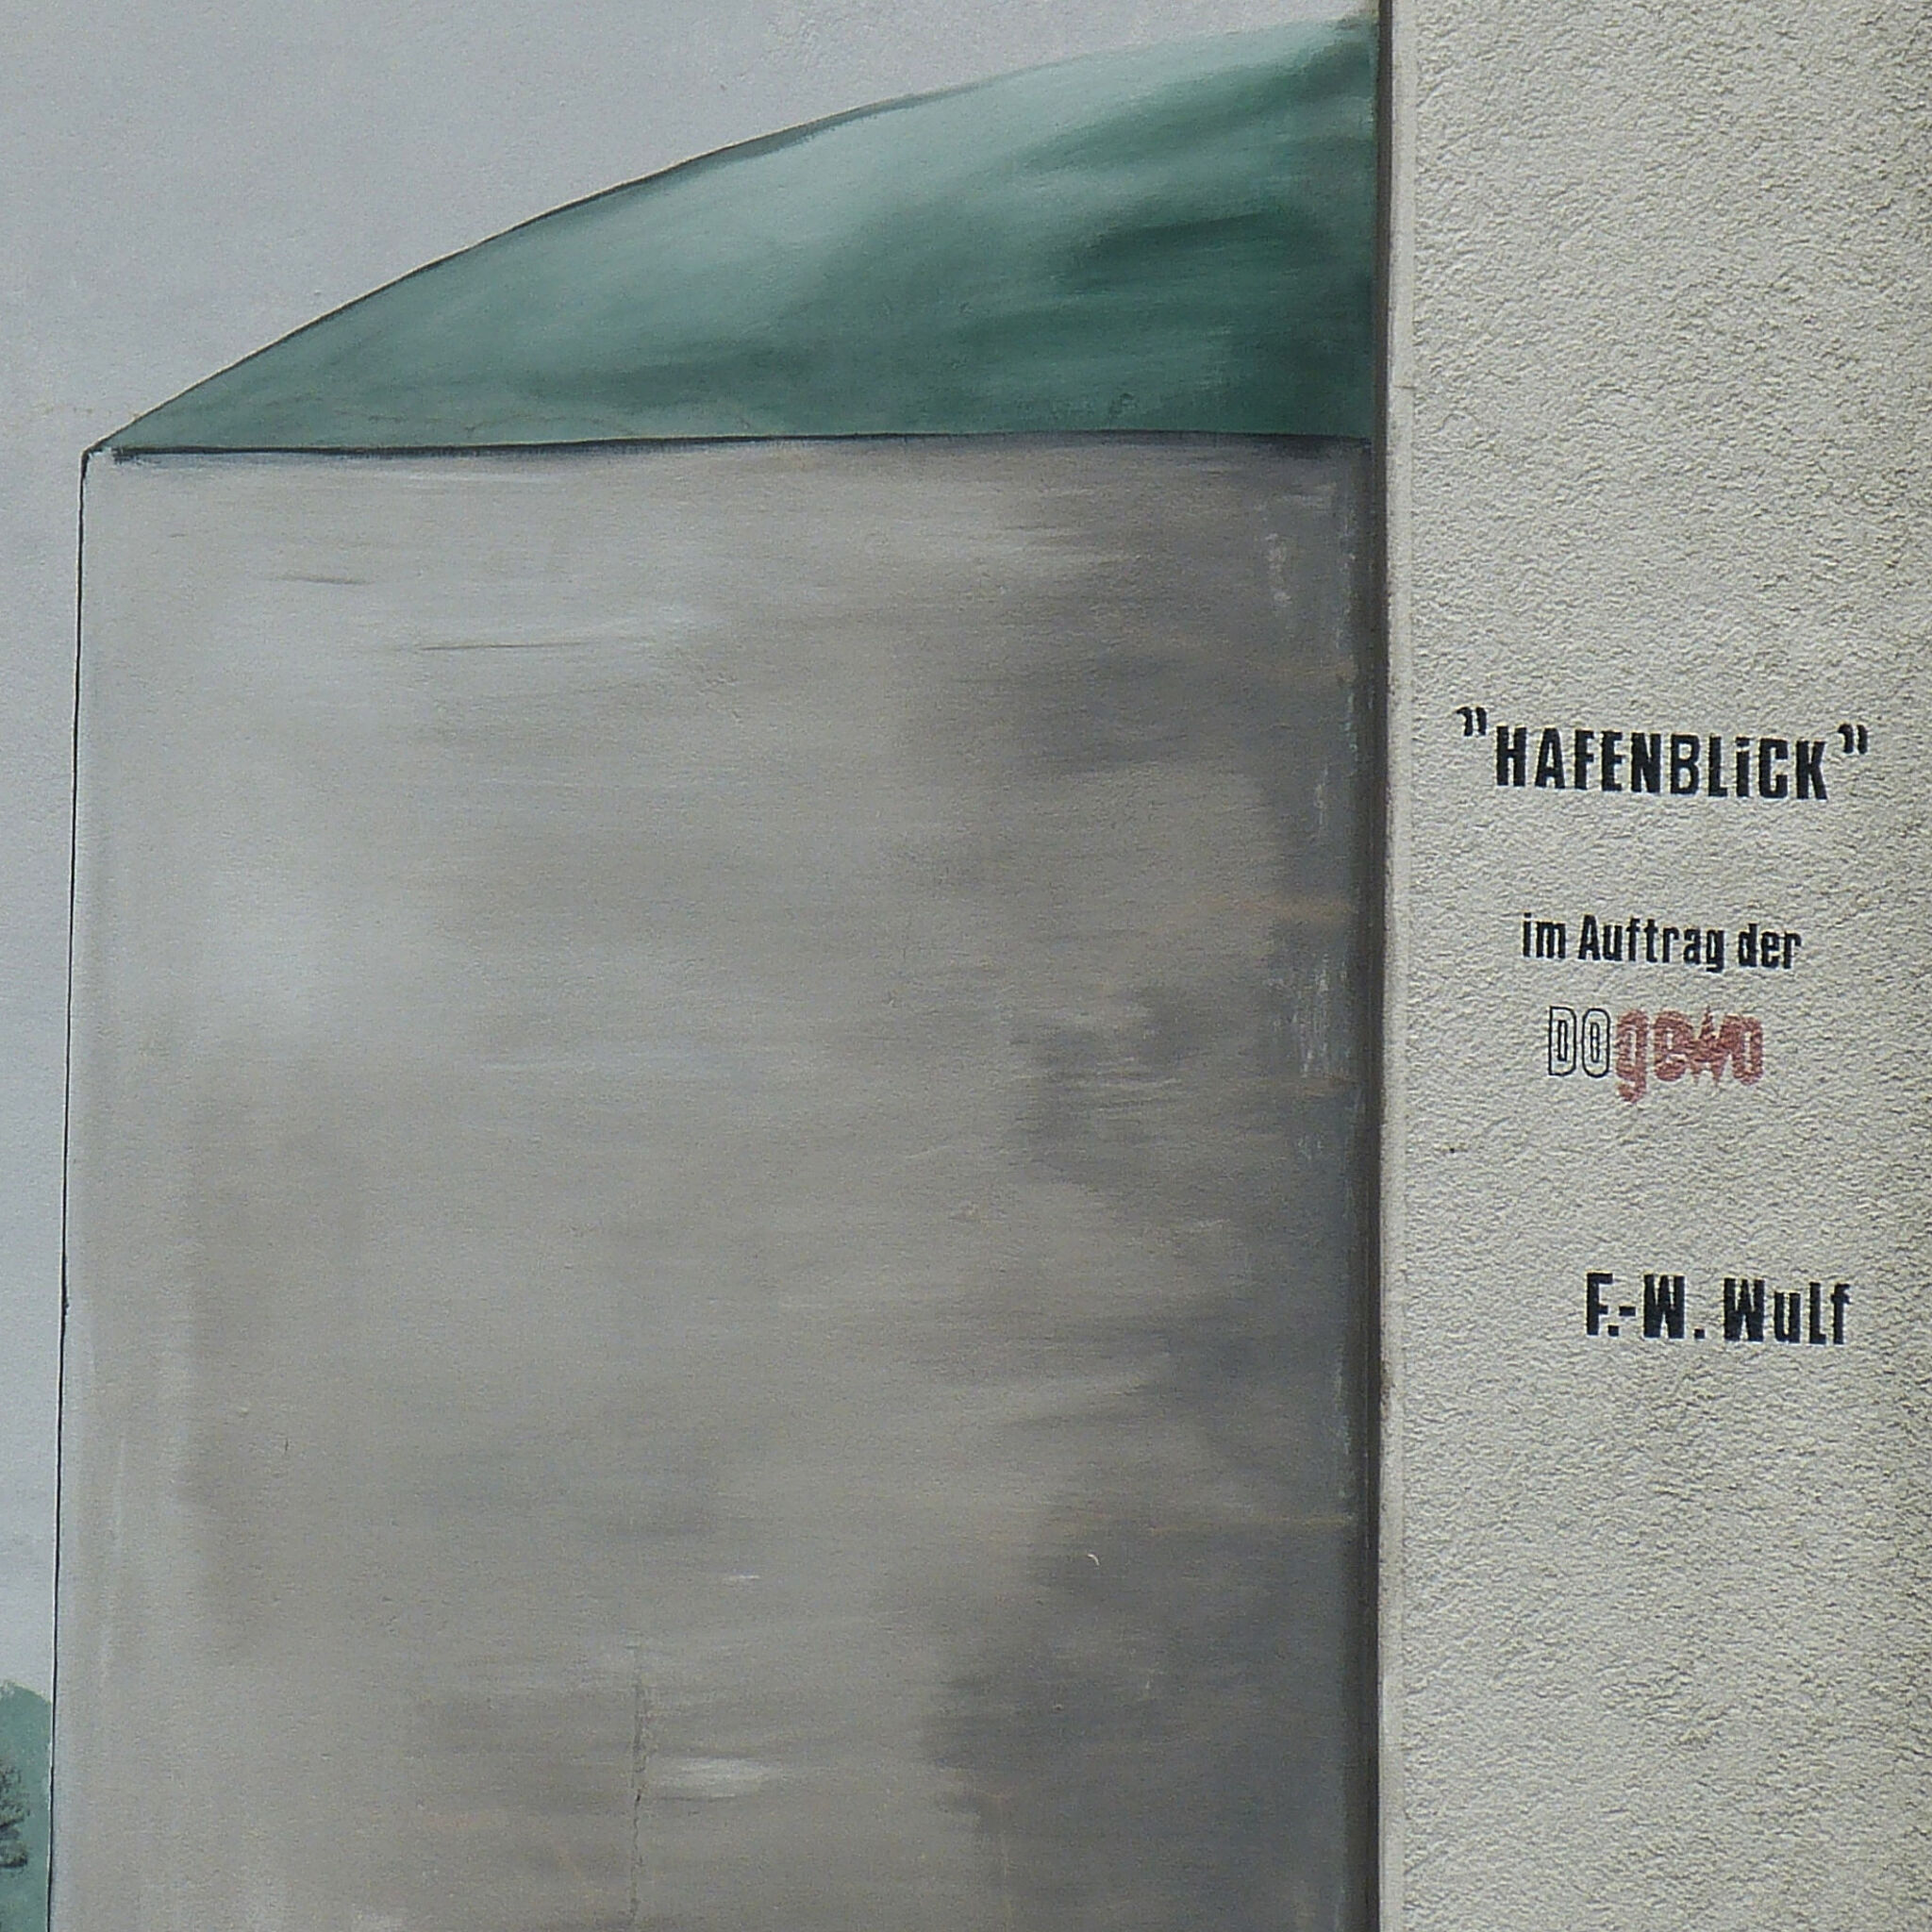 artist unknown&mdash;appartment house "Hafenblick" Gronaustraße 12